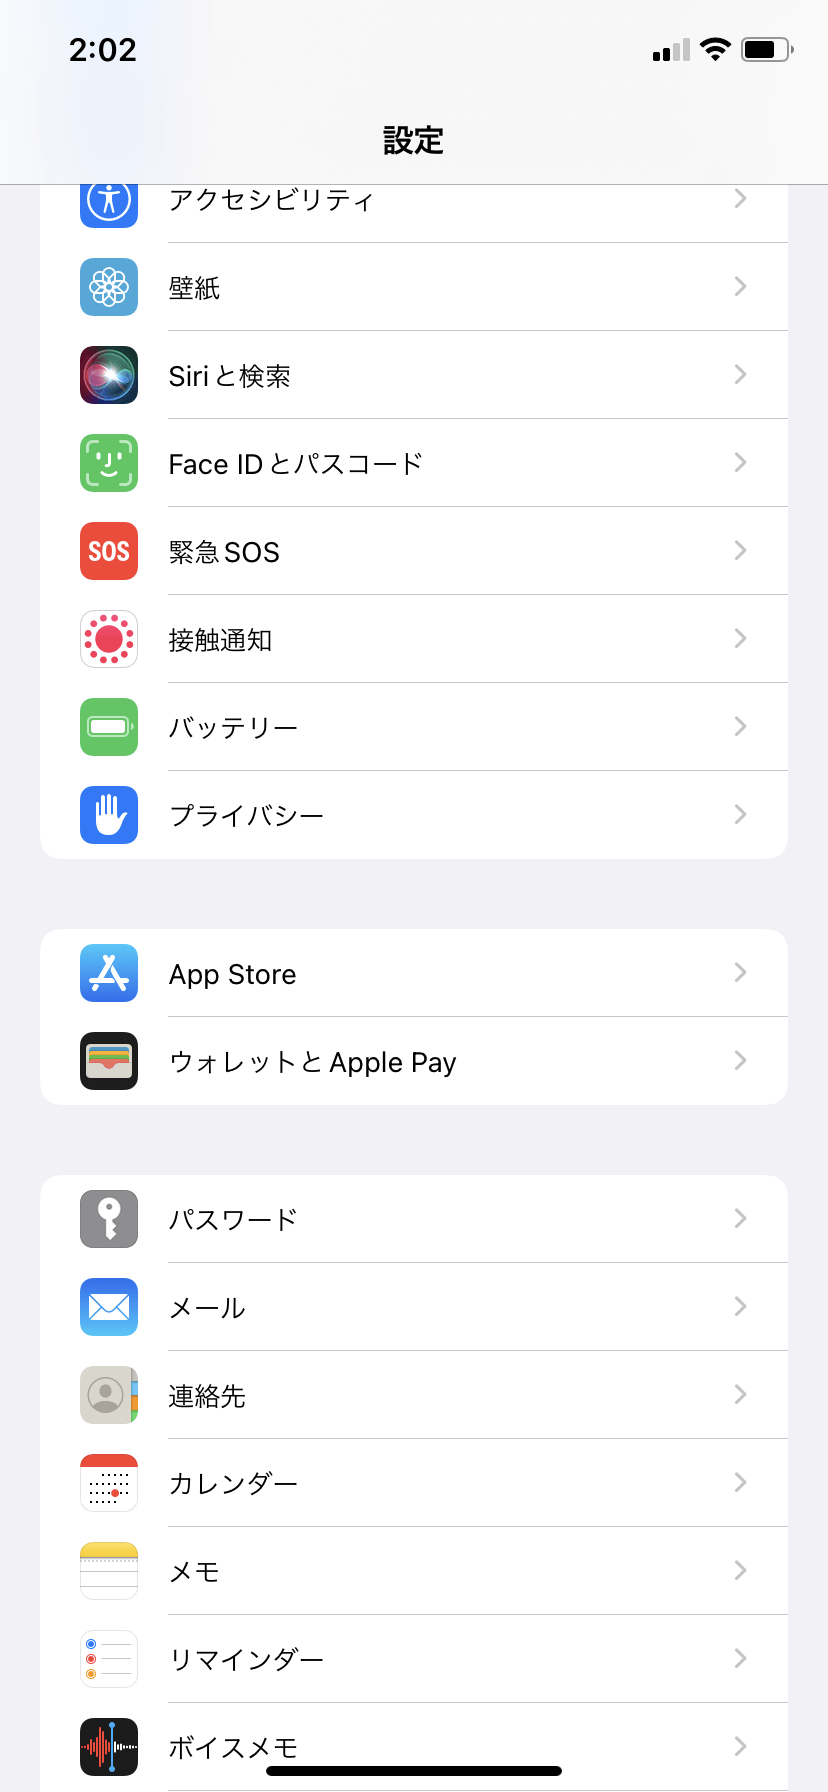 「設定」から「App Store」を選択する